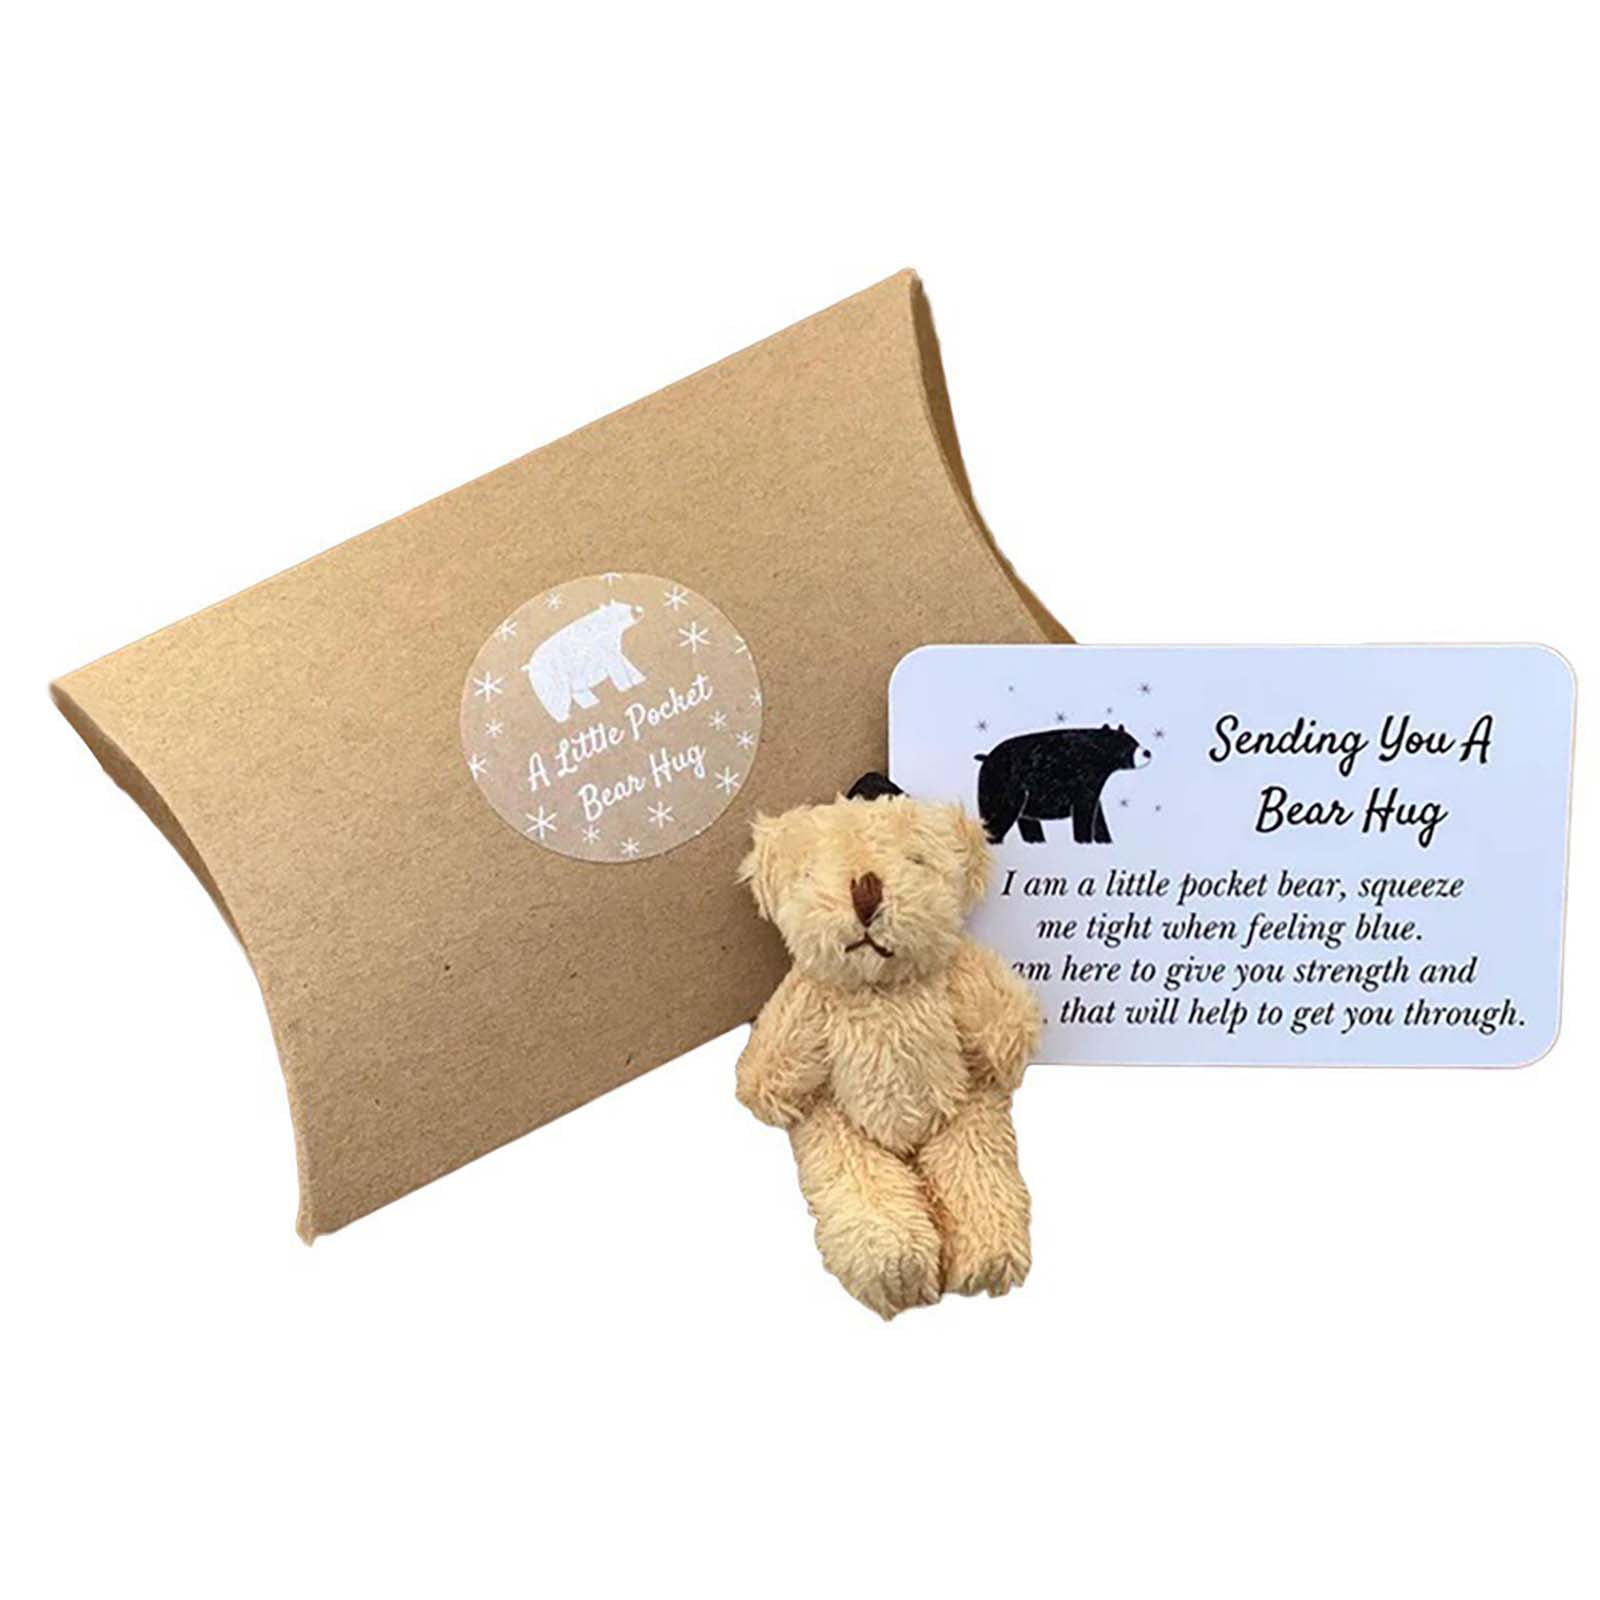 Trudi Bear Plush Love Box Gift Set 6.3 inch Exclusive Italian Designed New  